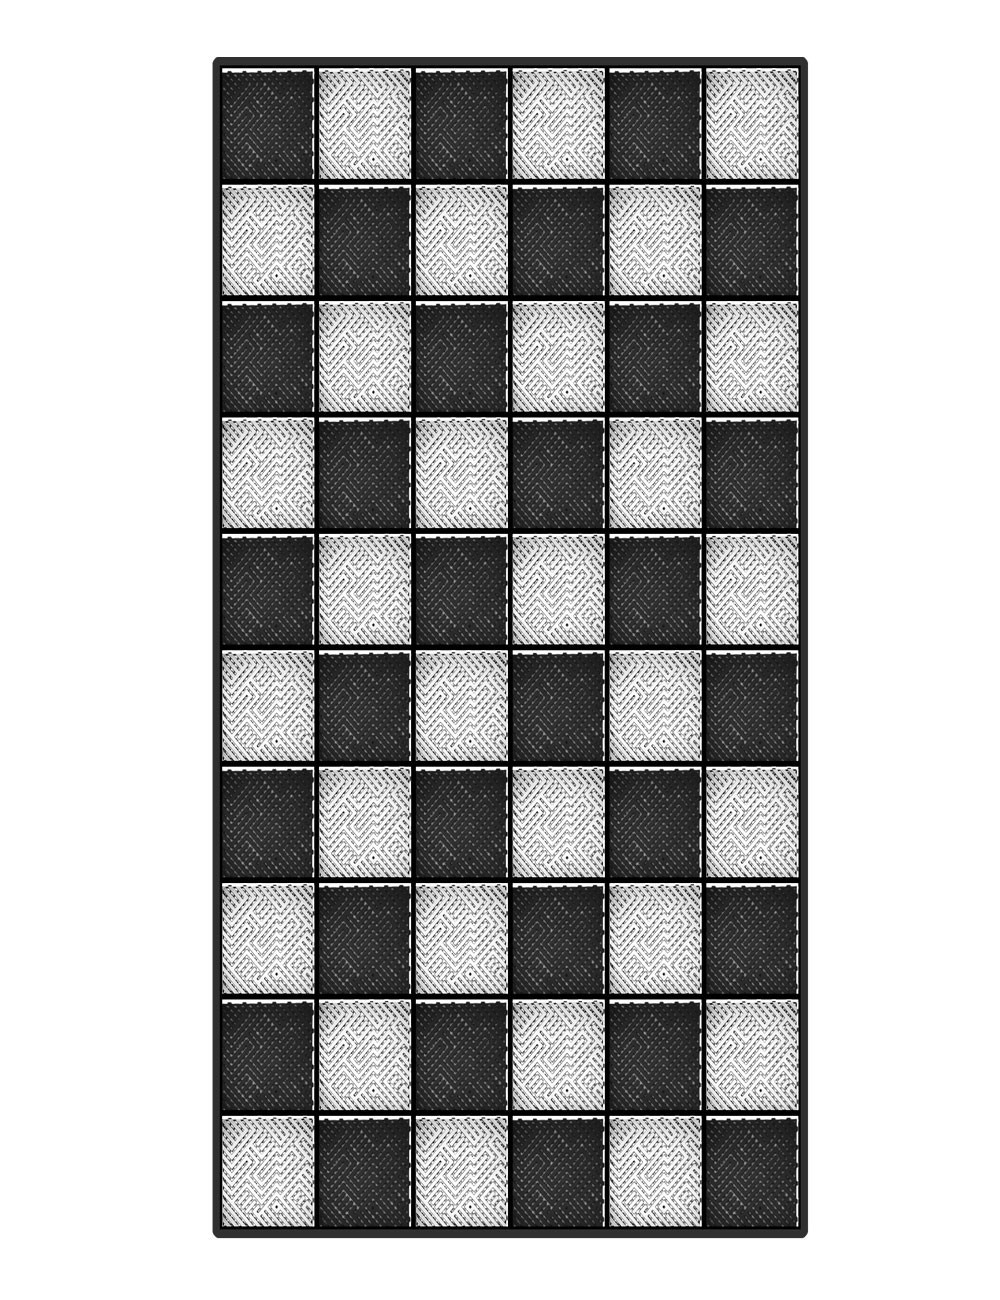 Kit dalles de sol damier pour garage - 15m² - 5 m x 3 m - Noir et blanc